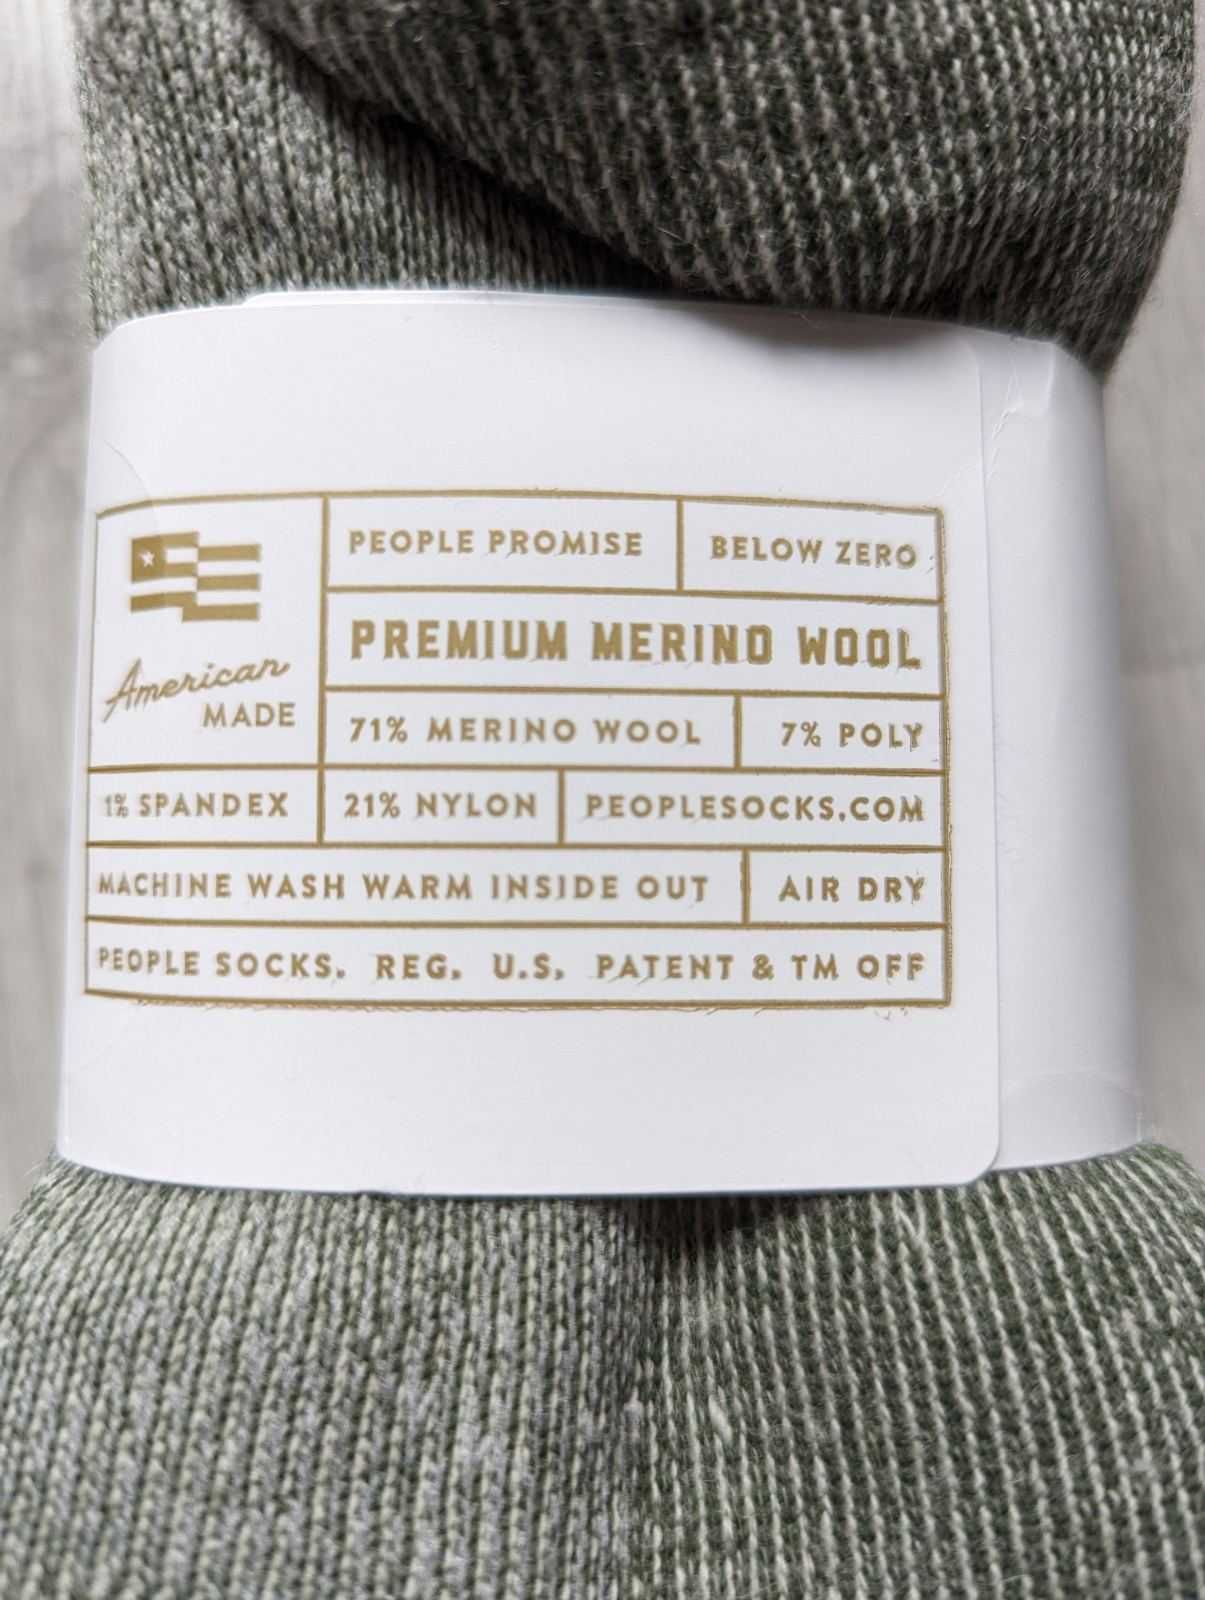 Шкарперки носки People socks BELOW ZERO CREW, 71% Premium merino wool